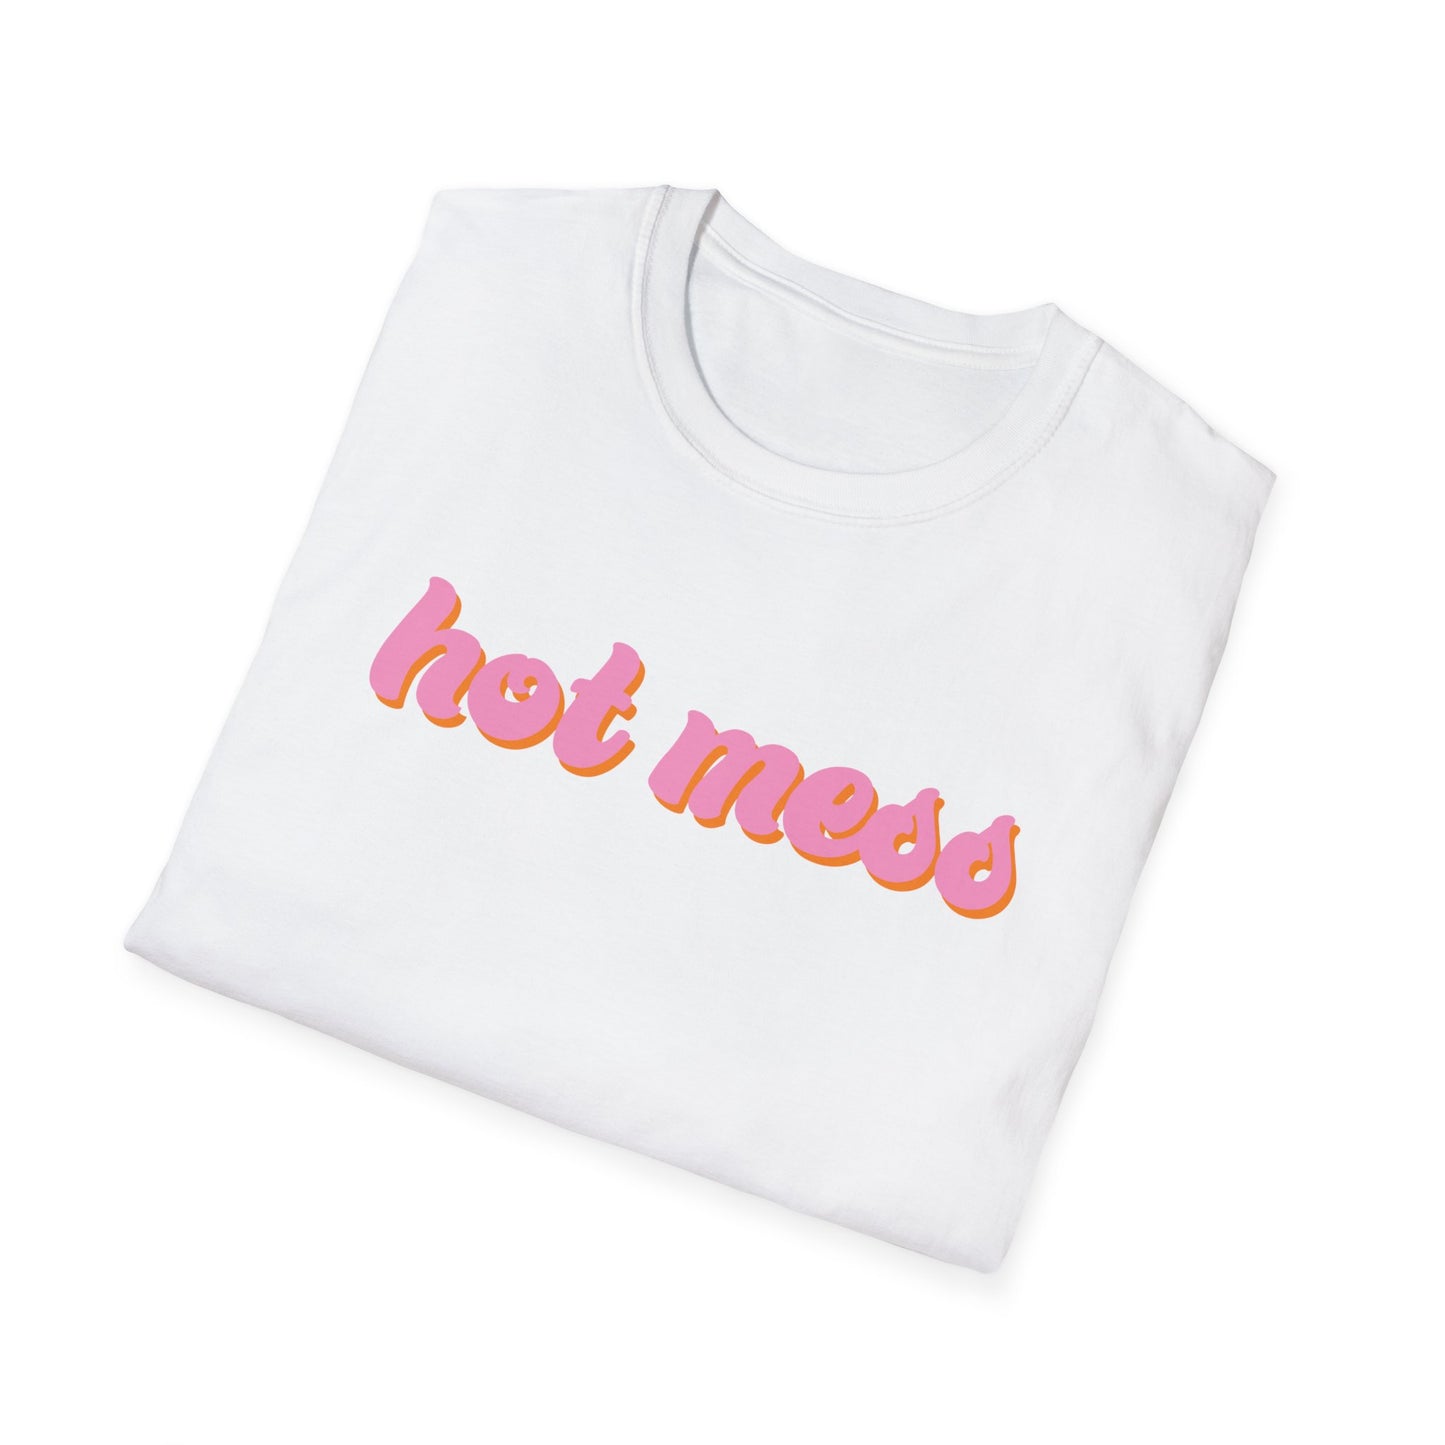 hot mess Unisex T-Shirt